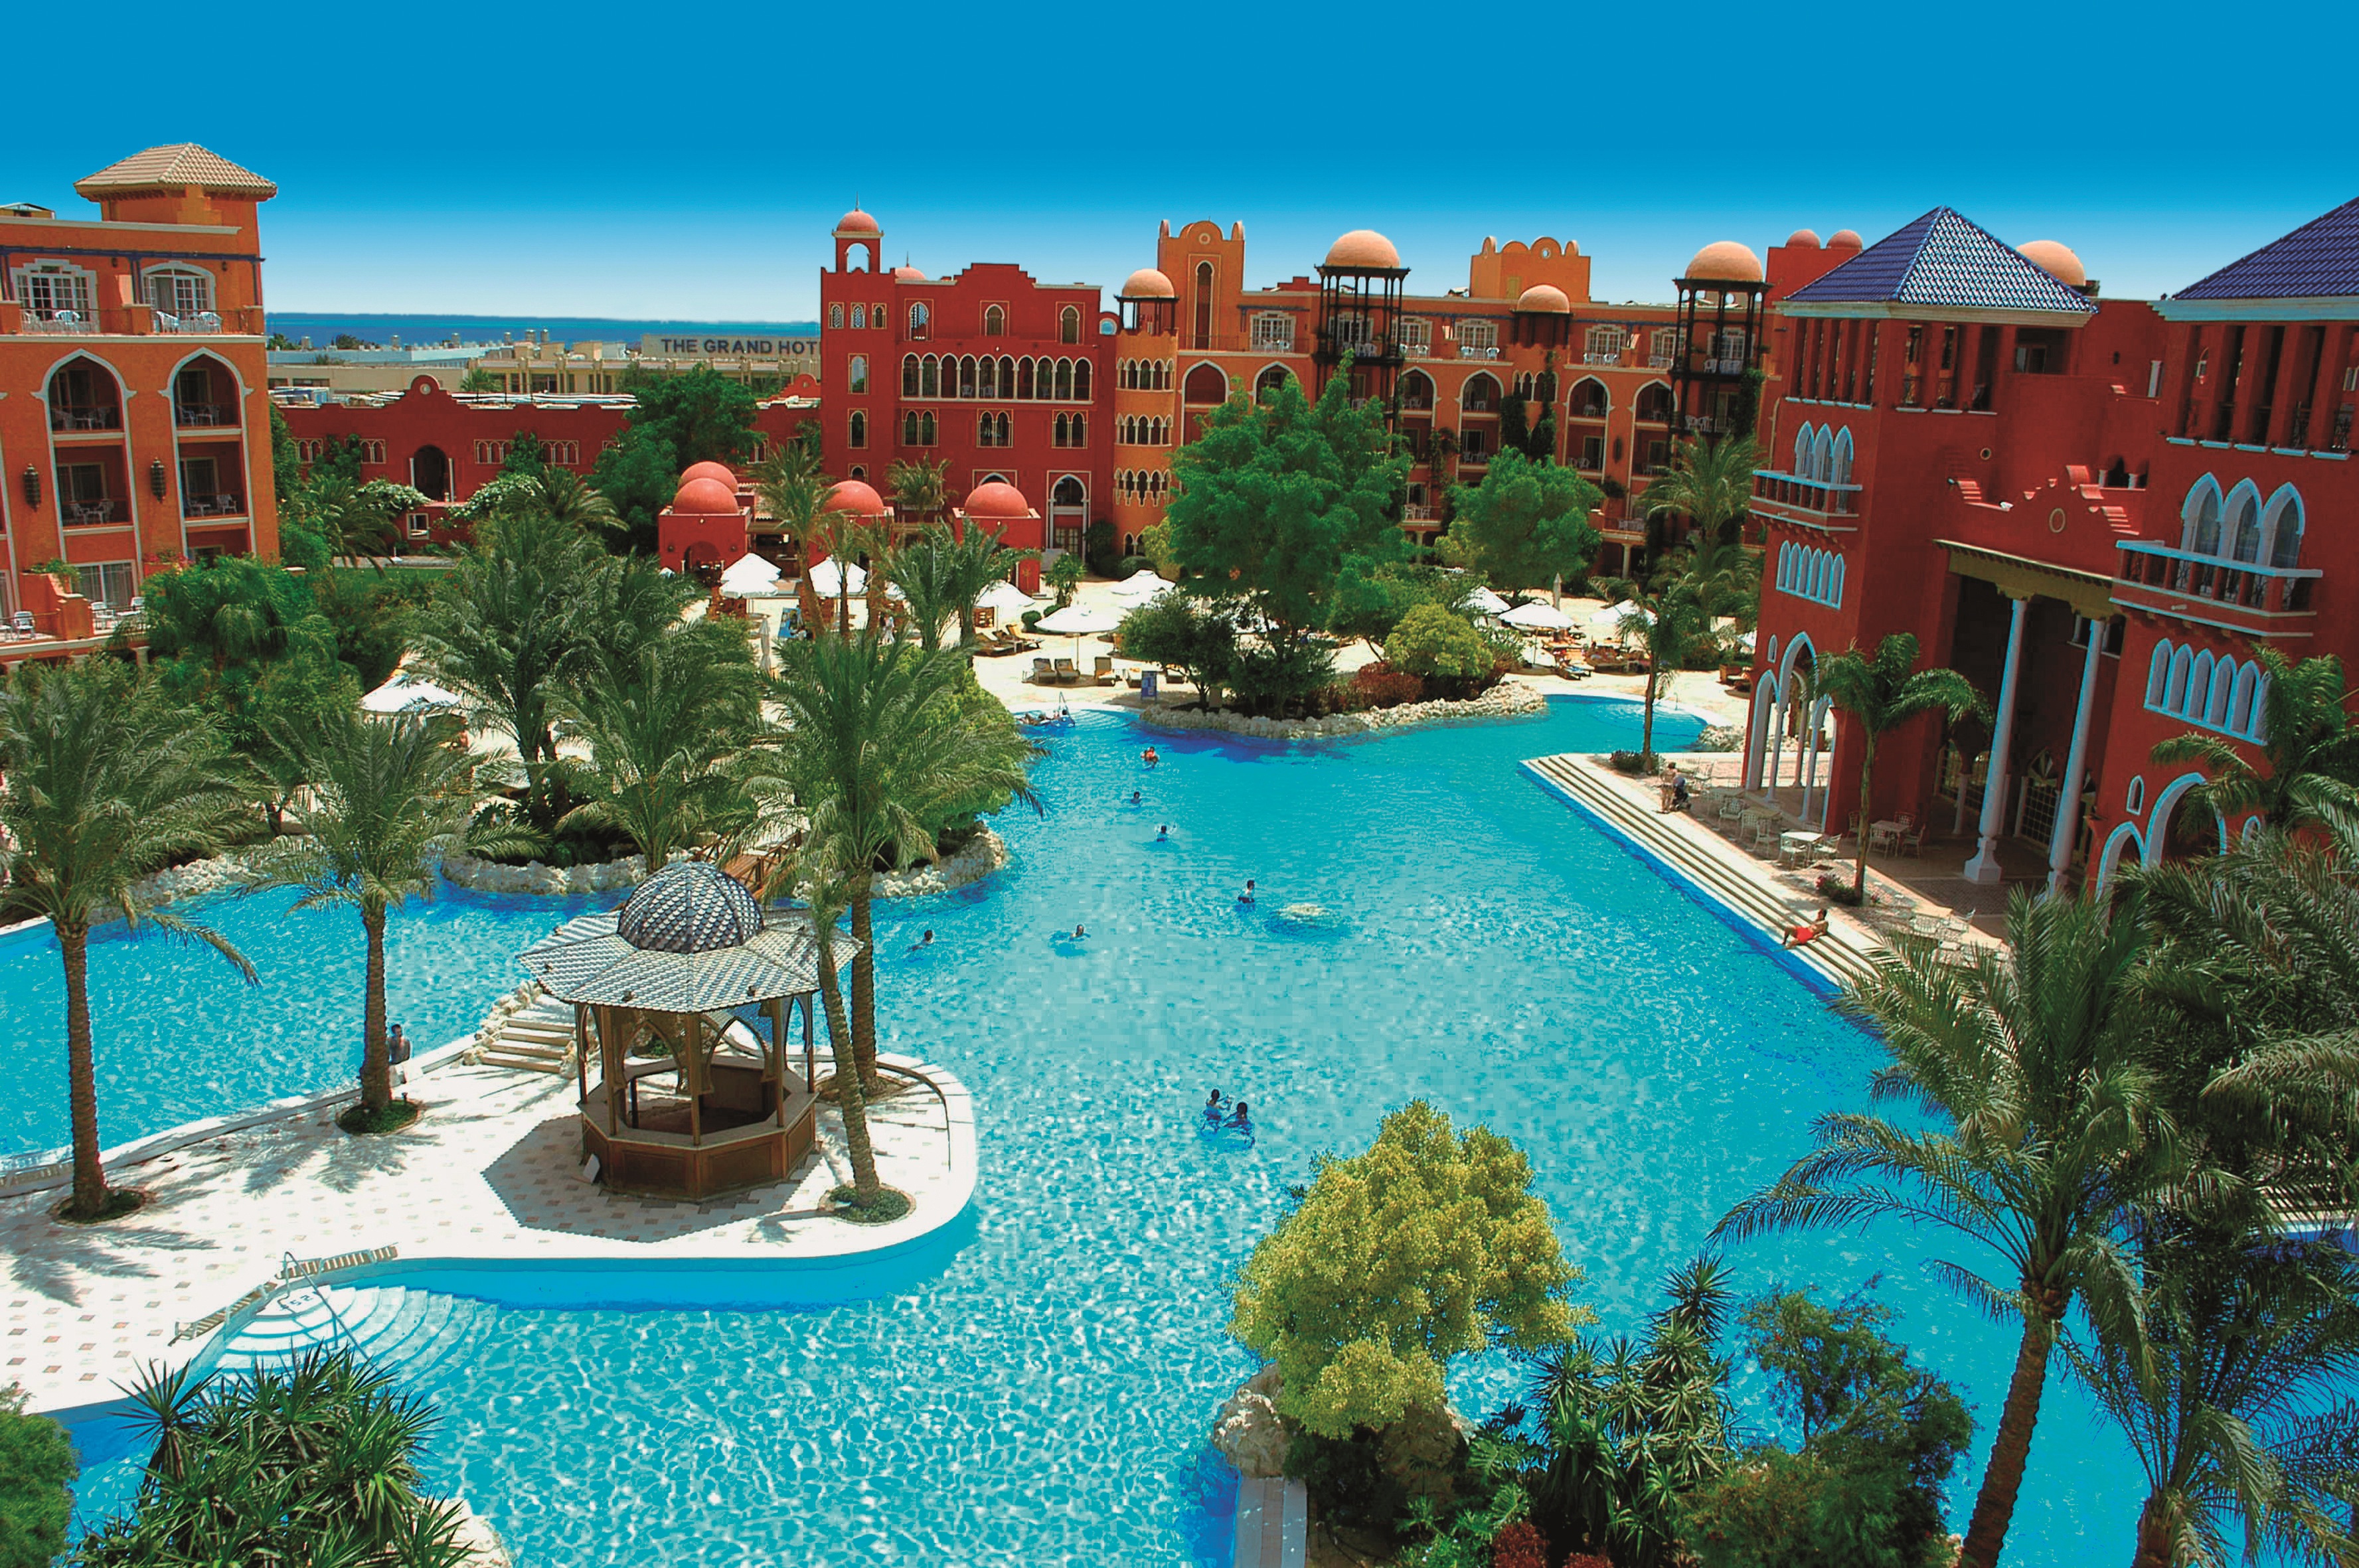 The Grand Hotel Hurghada - My Adele Store